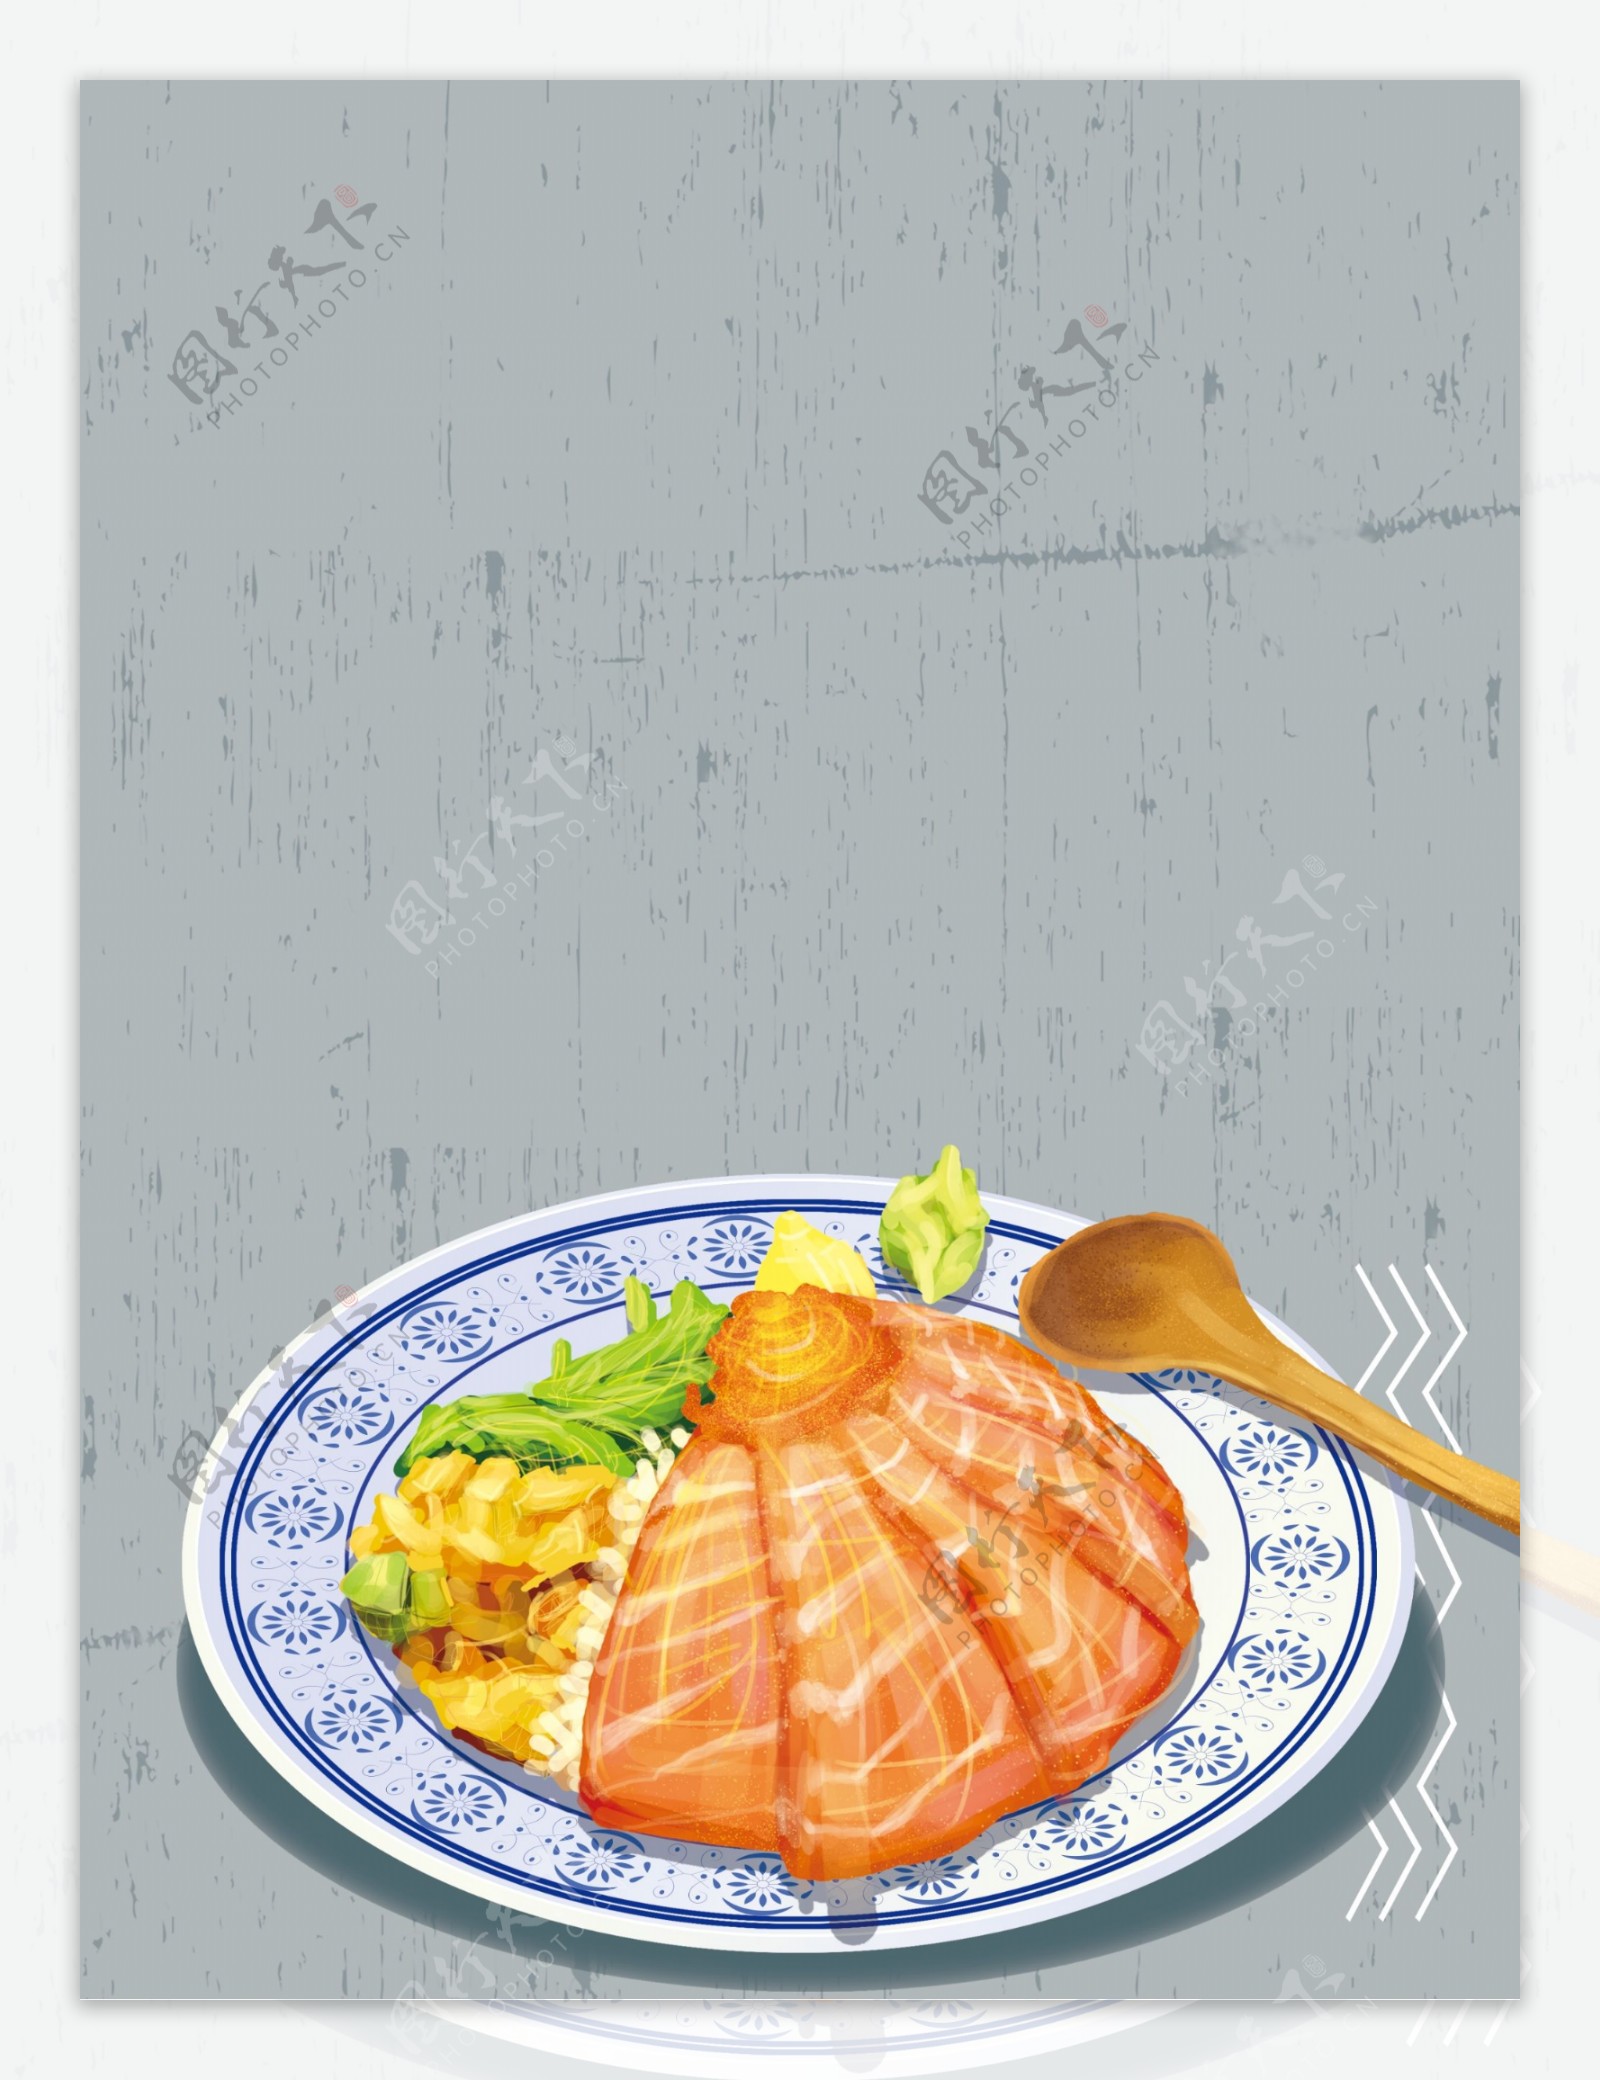 日式三文鱼面条美食背景素材